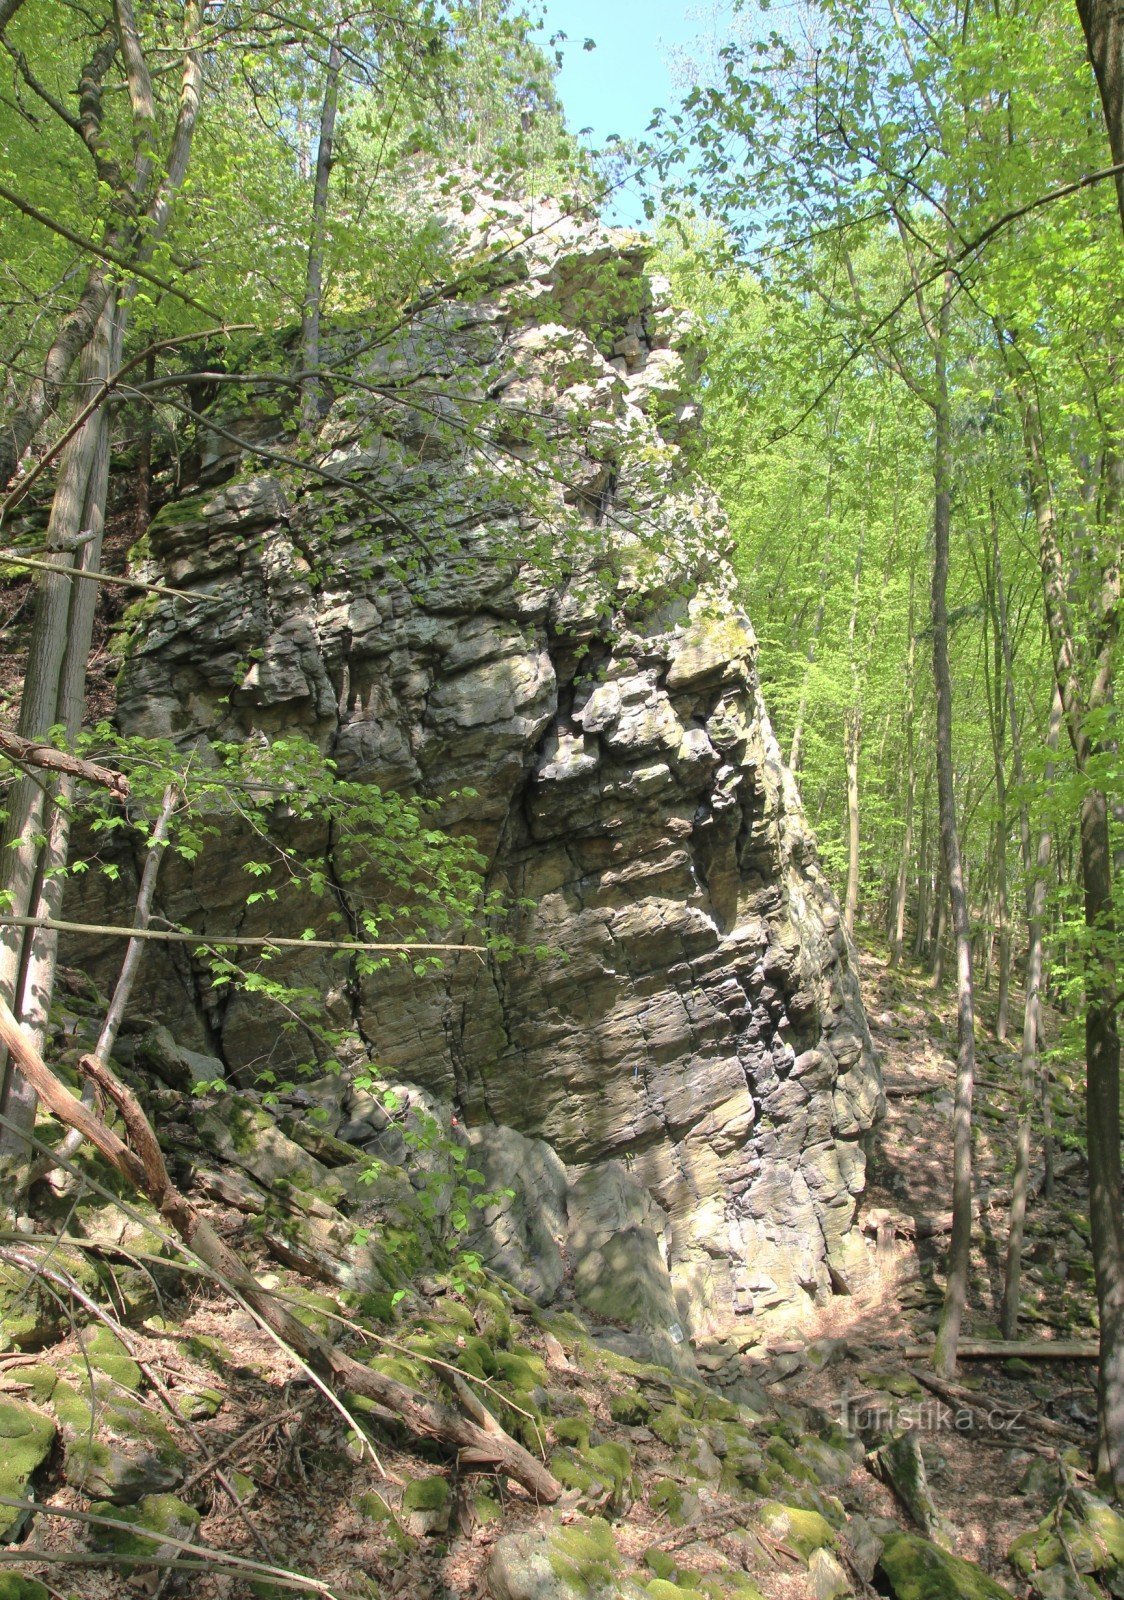 Ở phần dưới của nó, tảng đá Výří gần như thẳng đứng